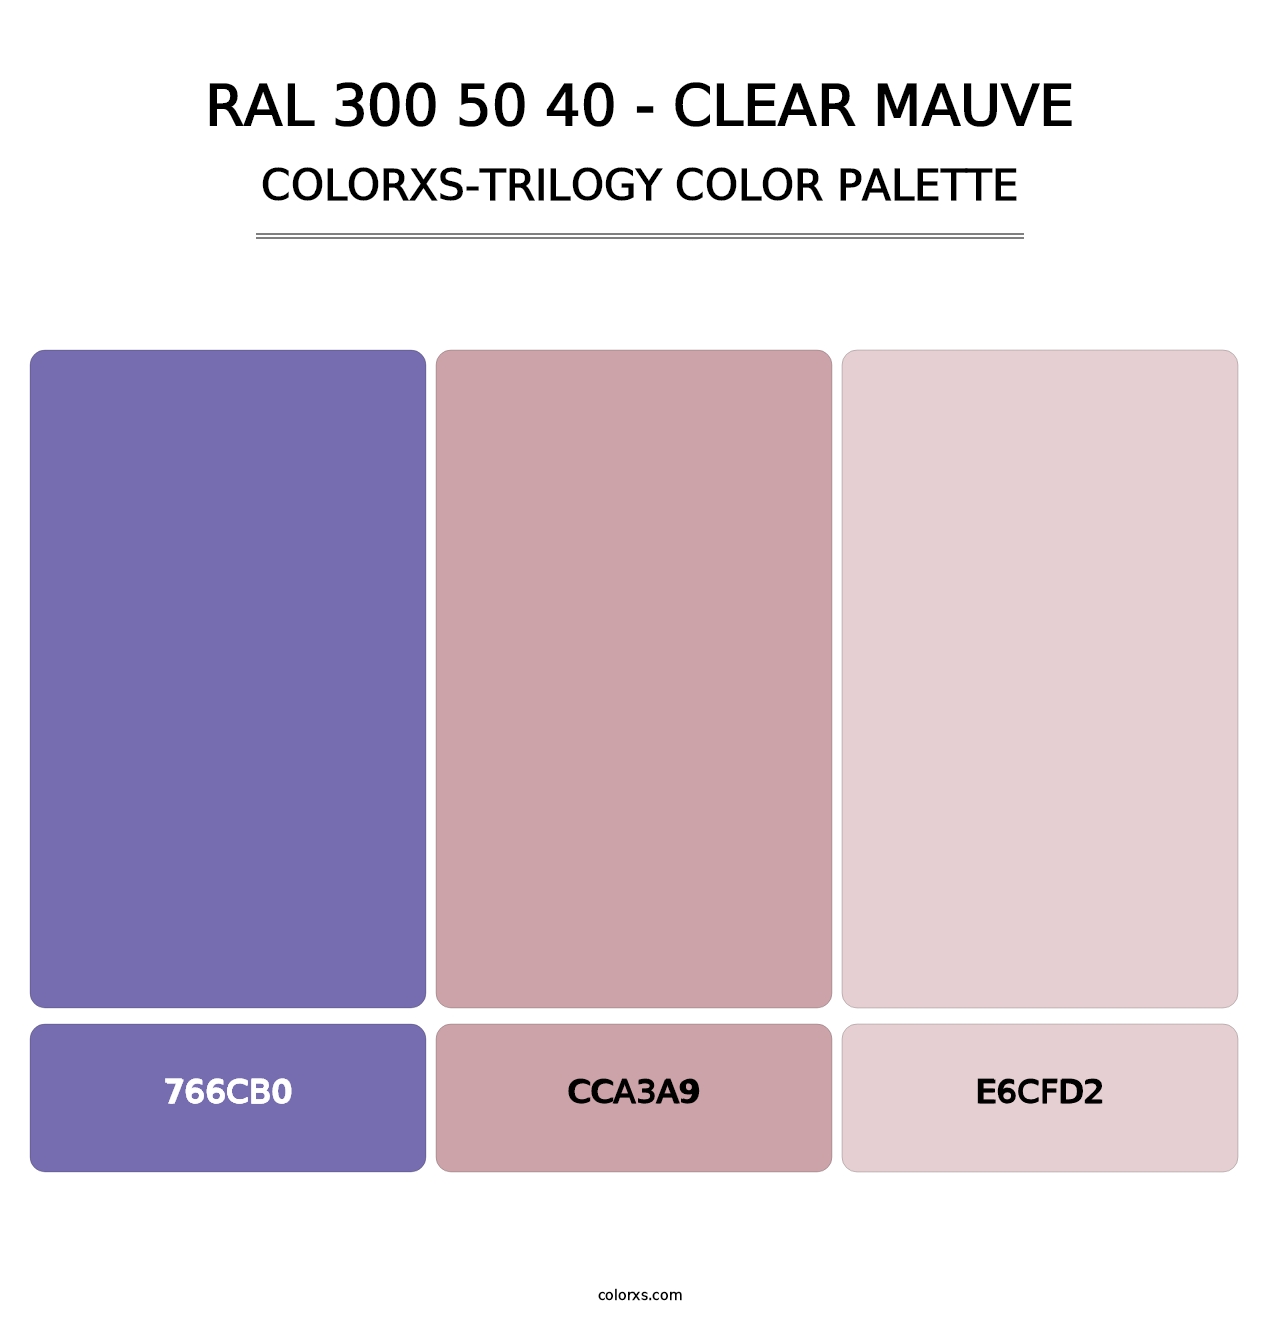 RAL 300 50 40 - Clear Mauve - Colorxs Trilogy Palette